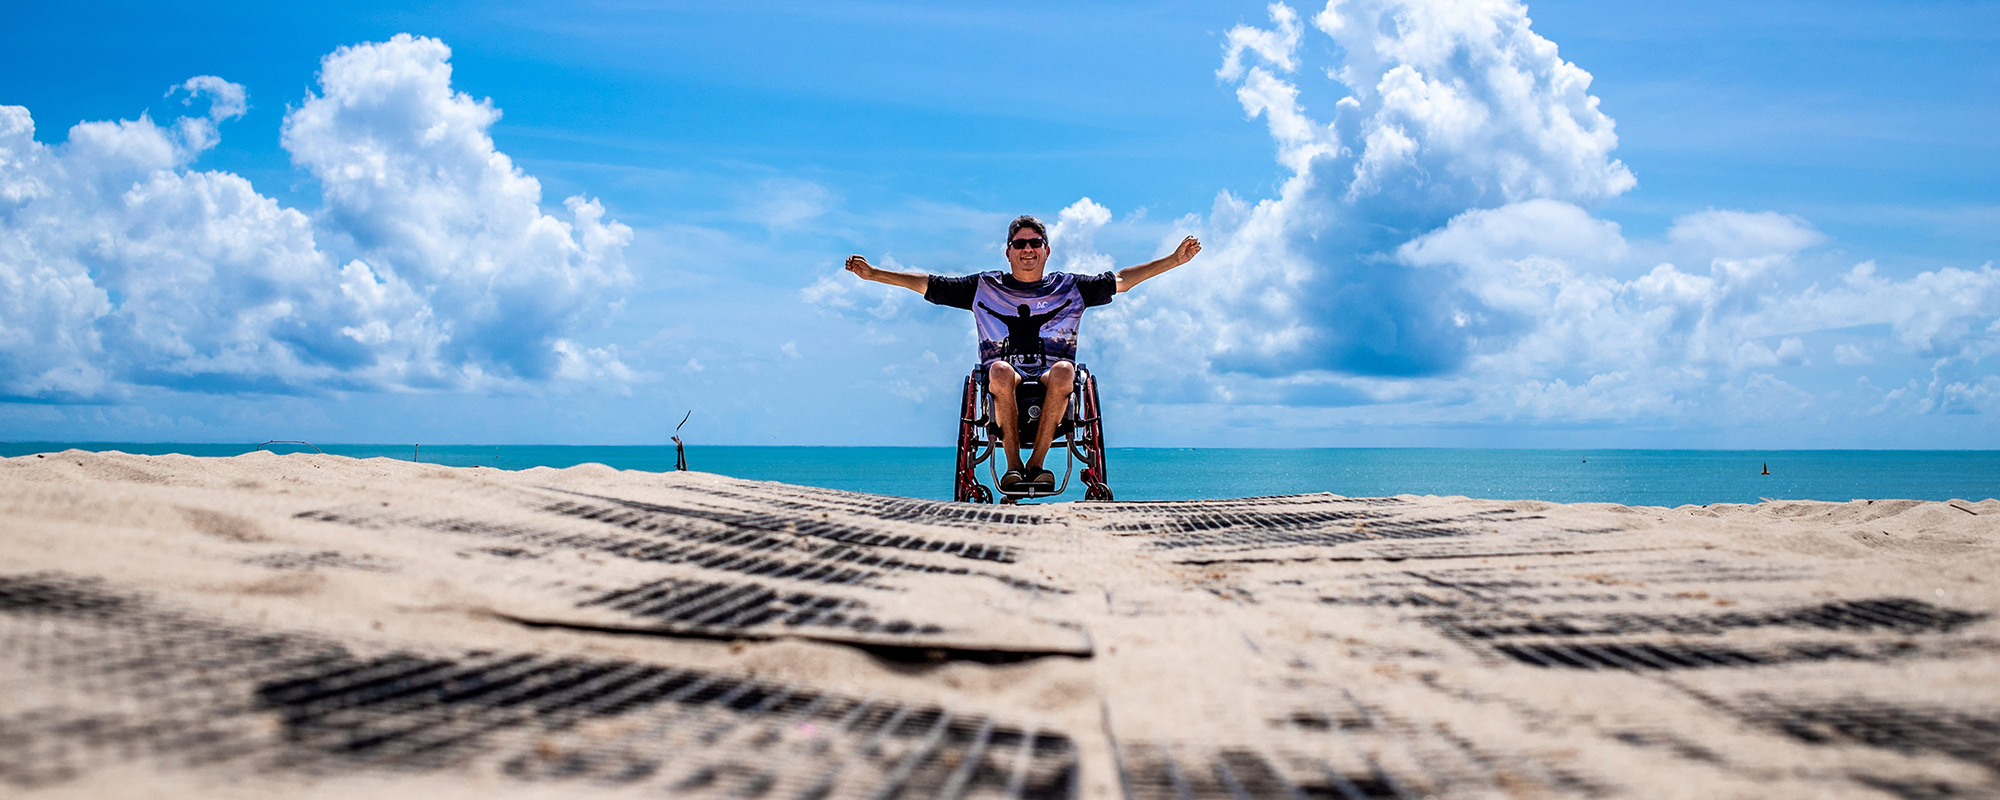 Handicaptravel - Urlaub barrierefrei